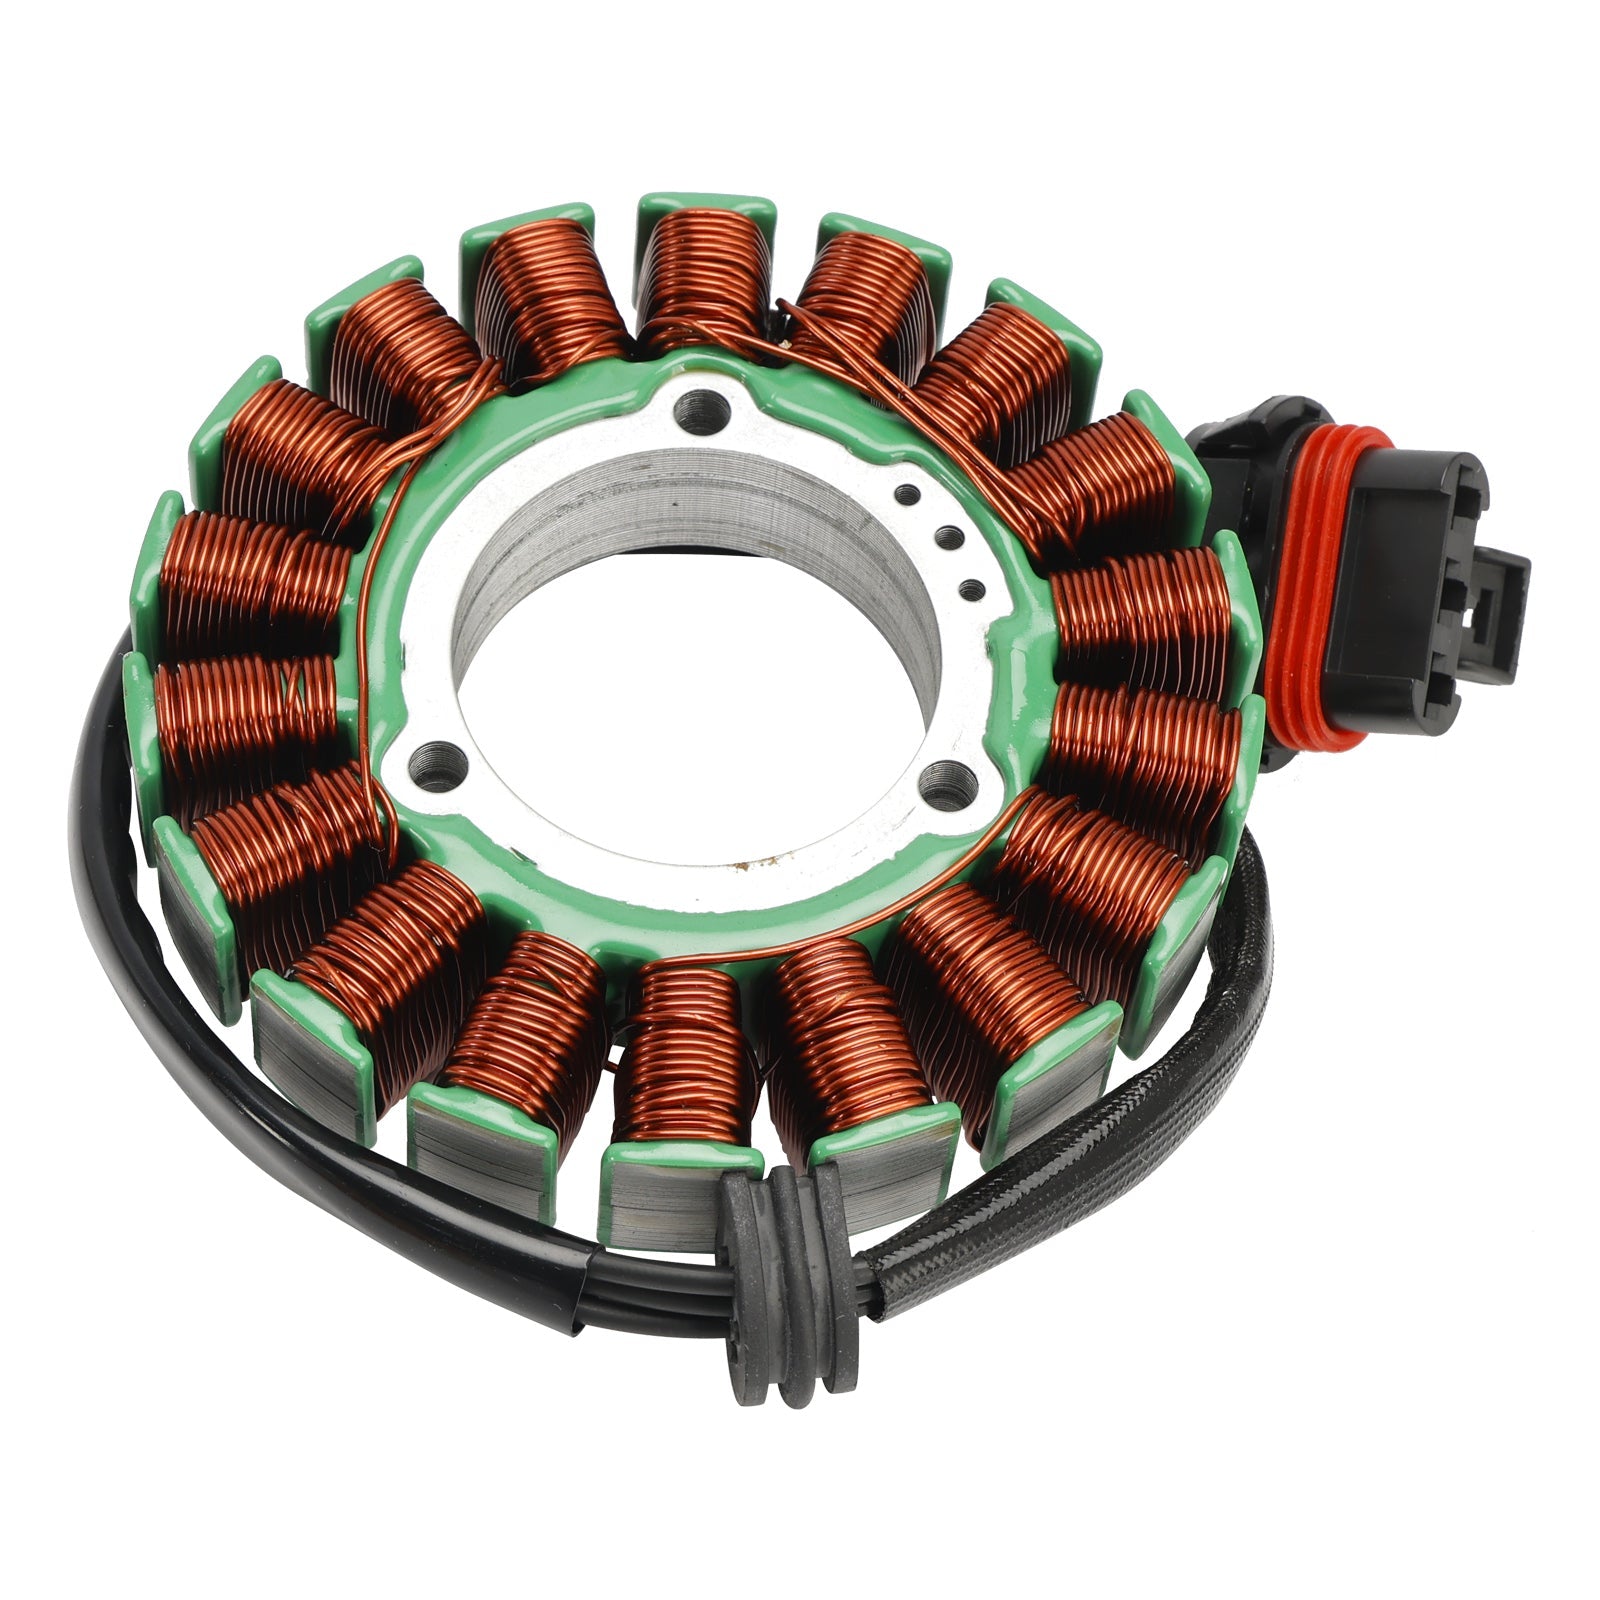 Stator de bobine magnétique + régulateur de tension + joint Assy adapté pour Polaris Ranger RZR XP 4 900 1000